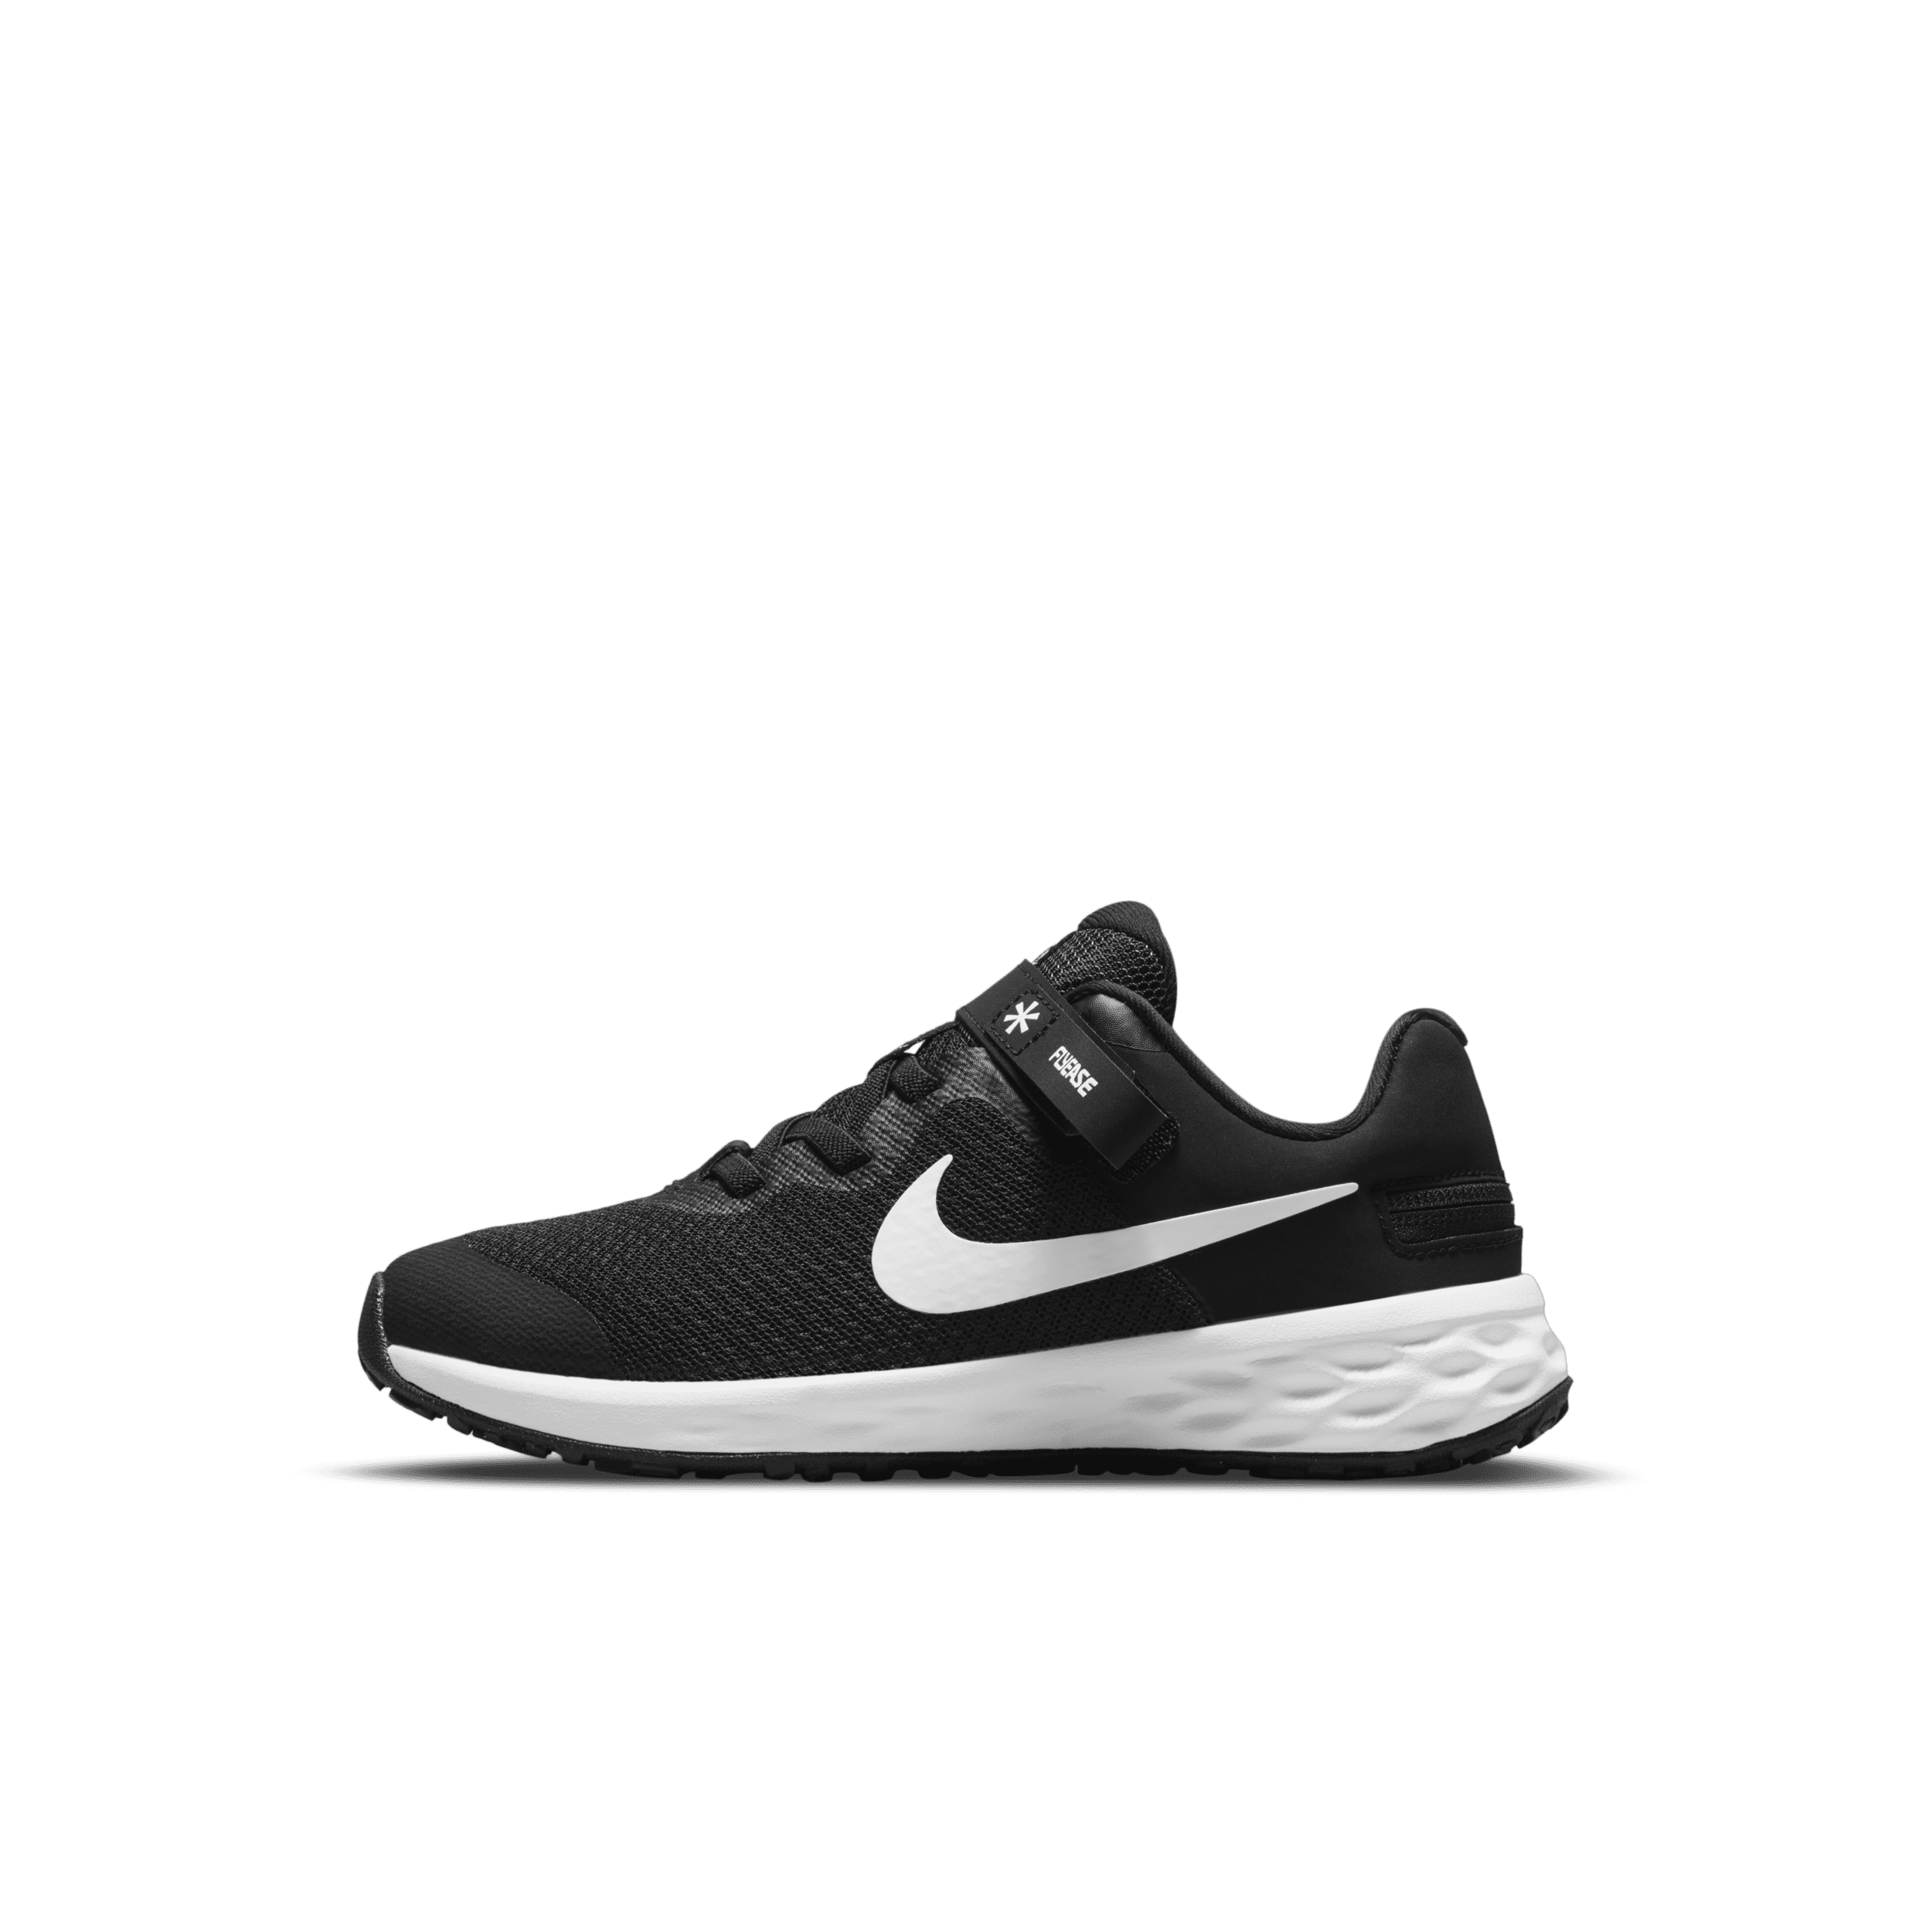 Παπούτσια με εύκολη εφαρμογή/αφαίρεση Nike Revolution 6 FlyEase για μικρά παιδιά - Μαύρο